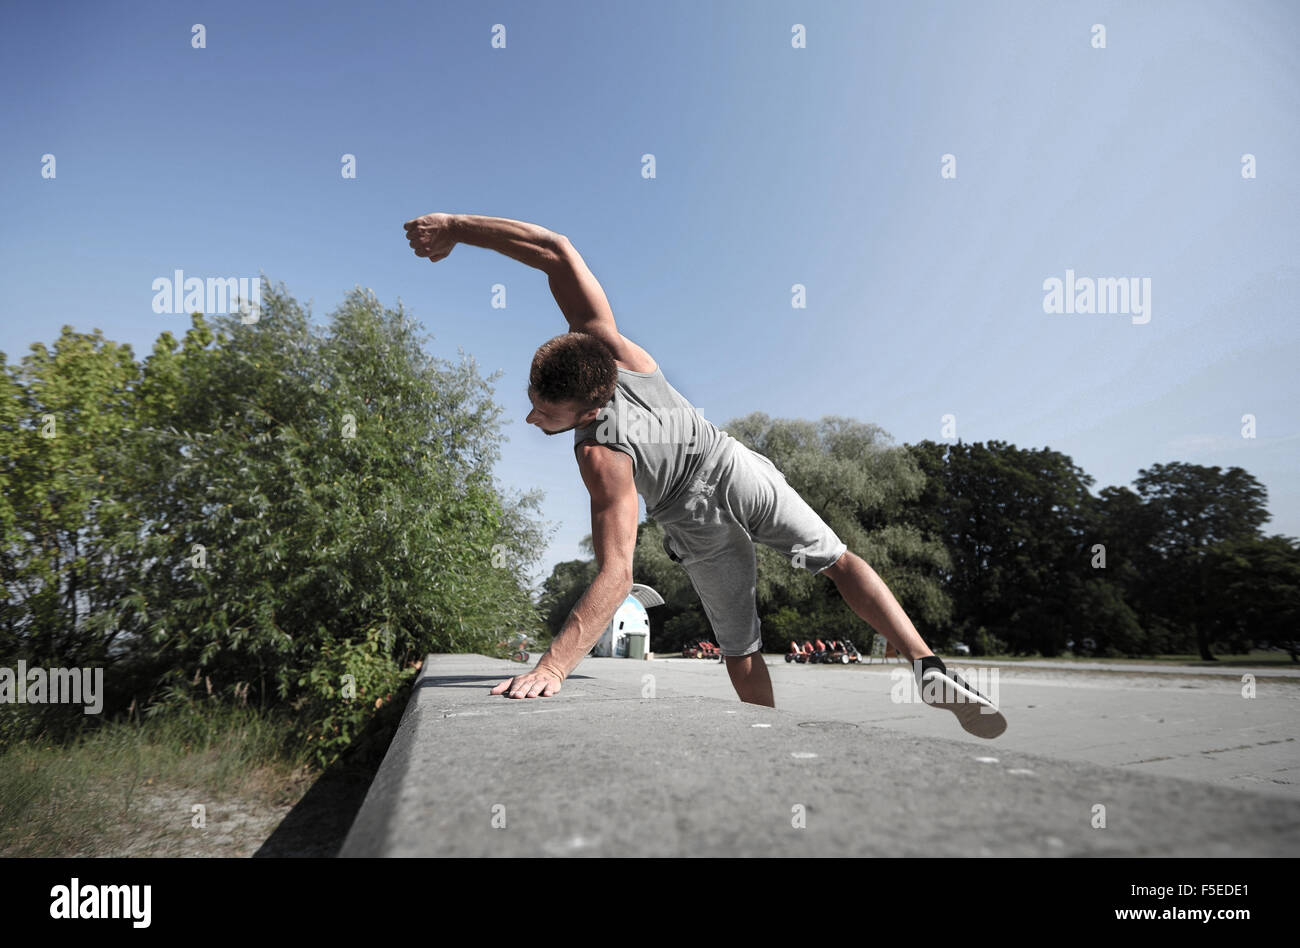 Deportivo joven saltando en verano park Foto de stock